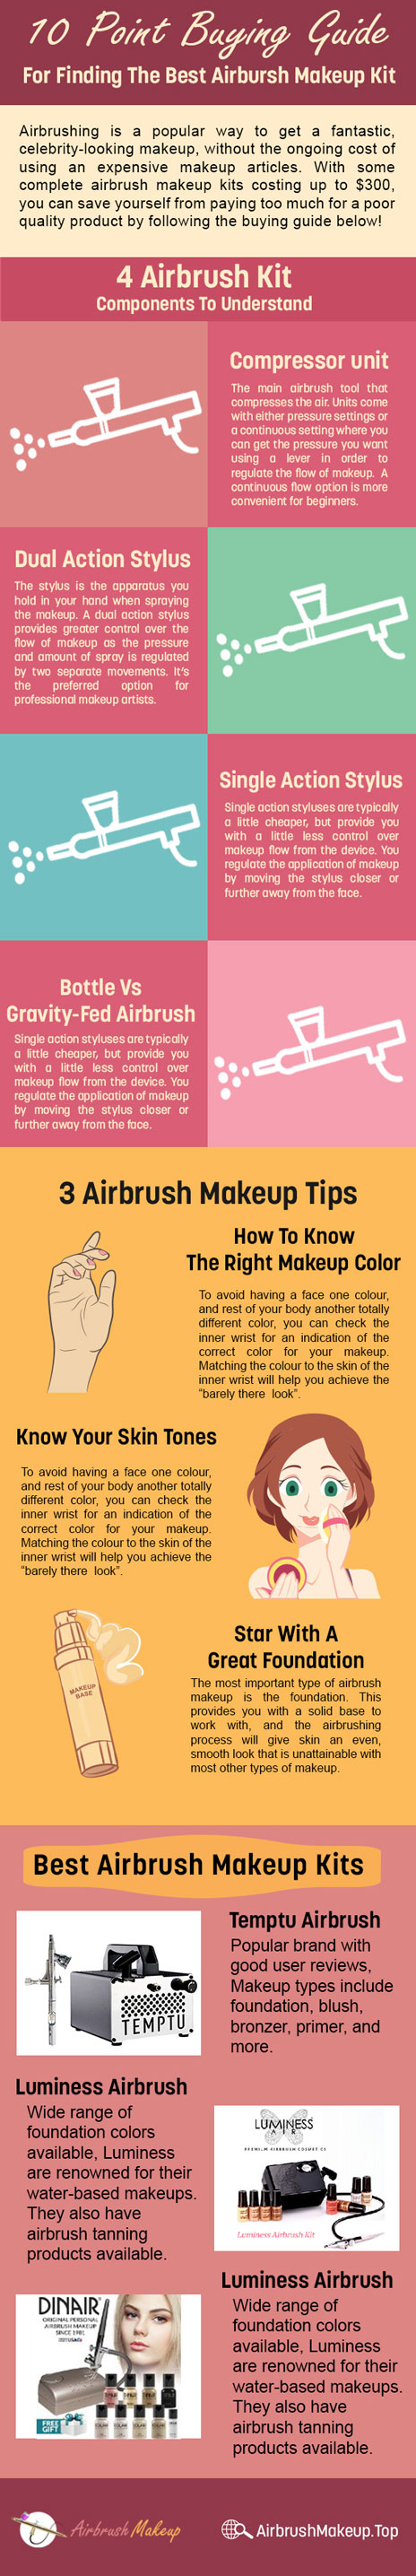 Airbrush-Makeup-Kit-Buying-Guide